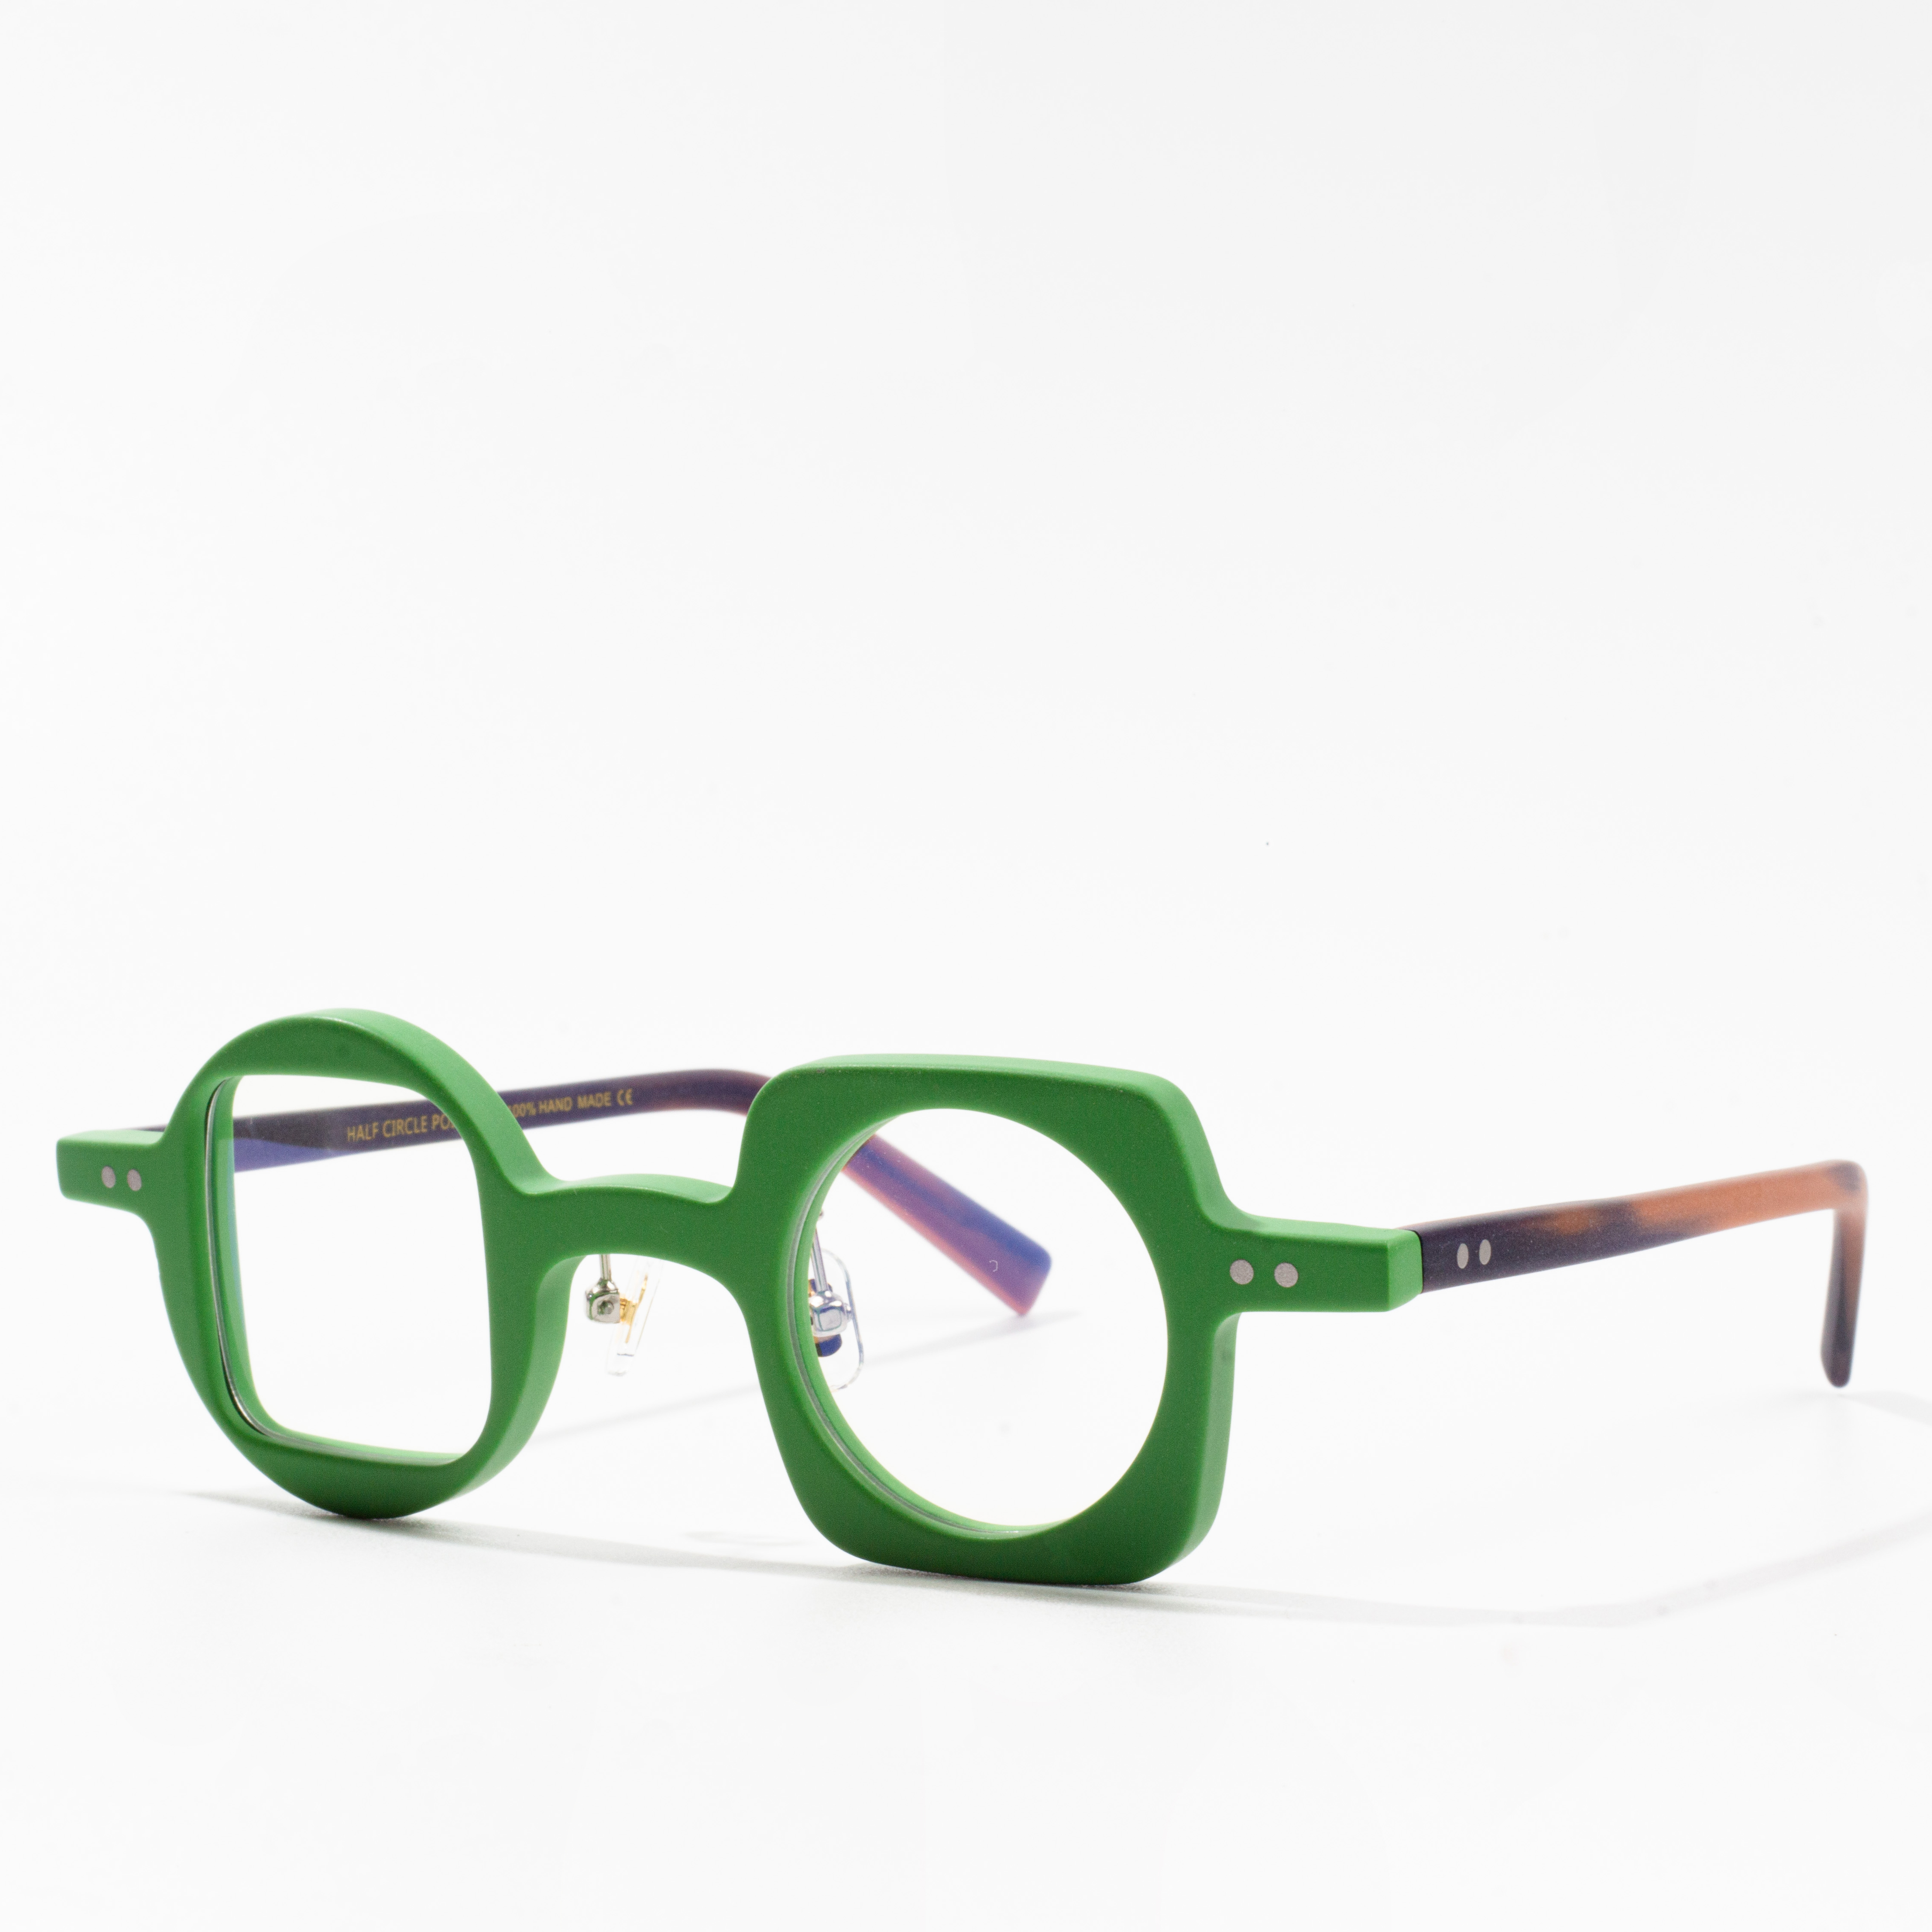 Europeeske brille frames